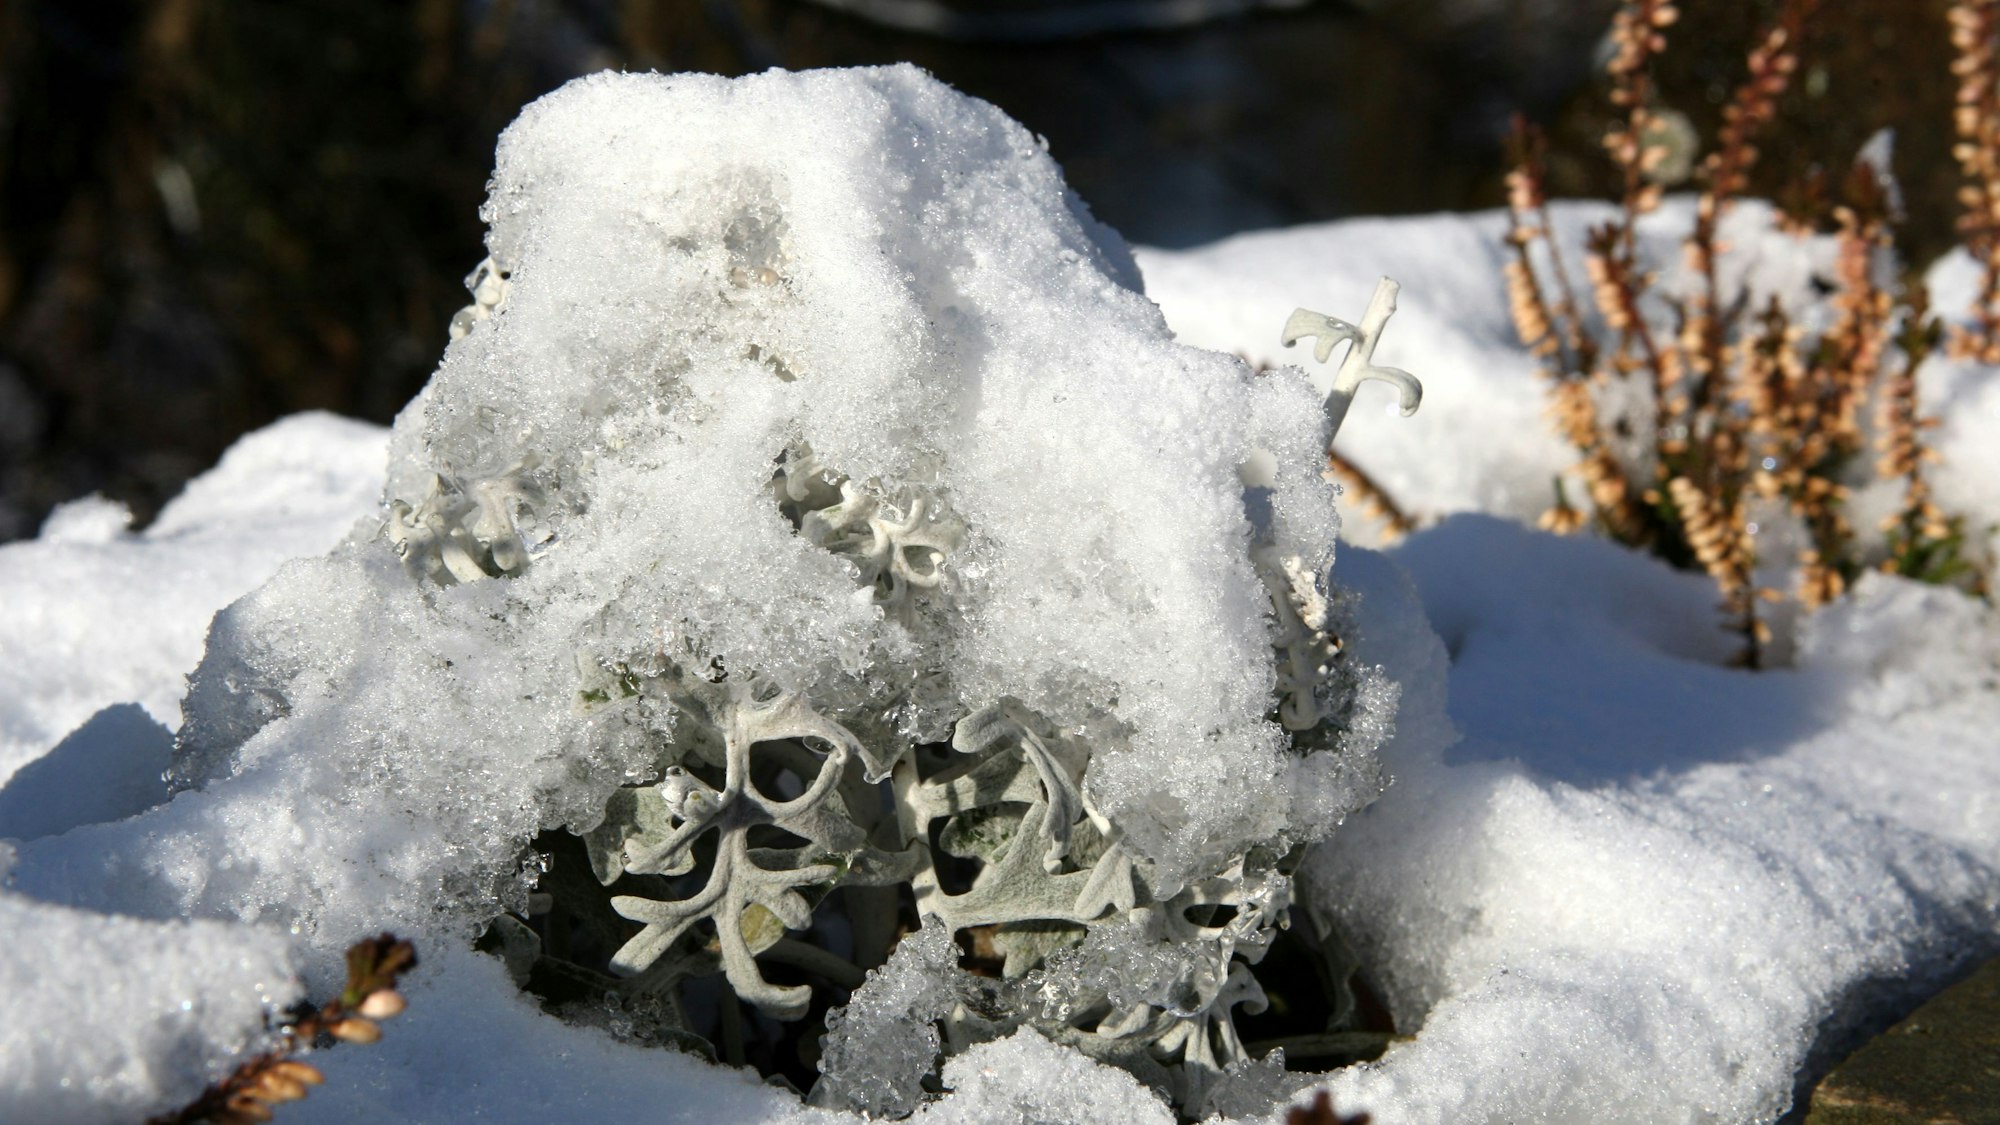 Schnee bedeckt Pflanzen in einem Beet.